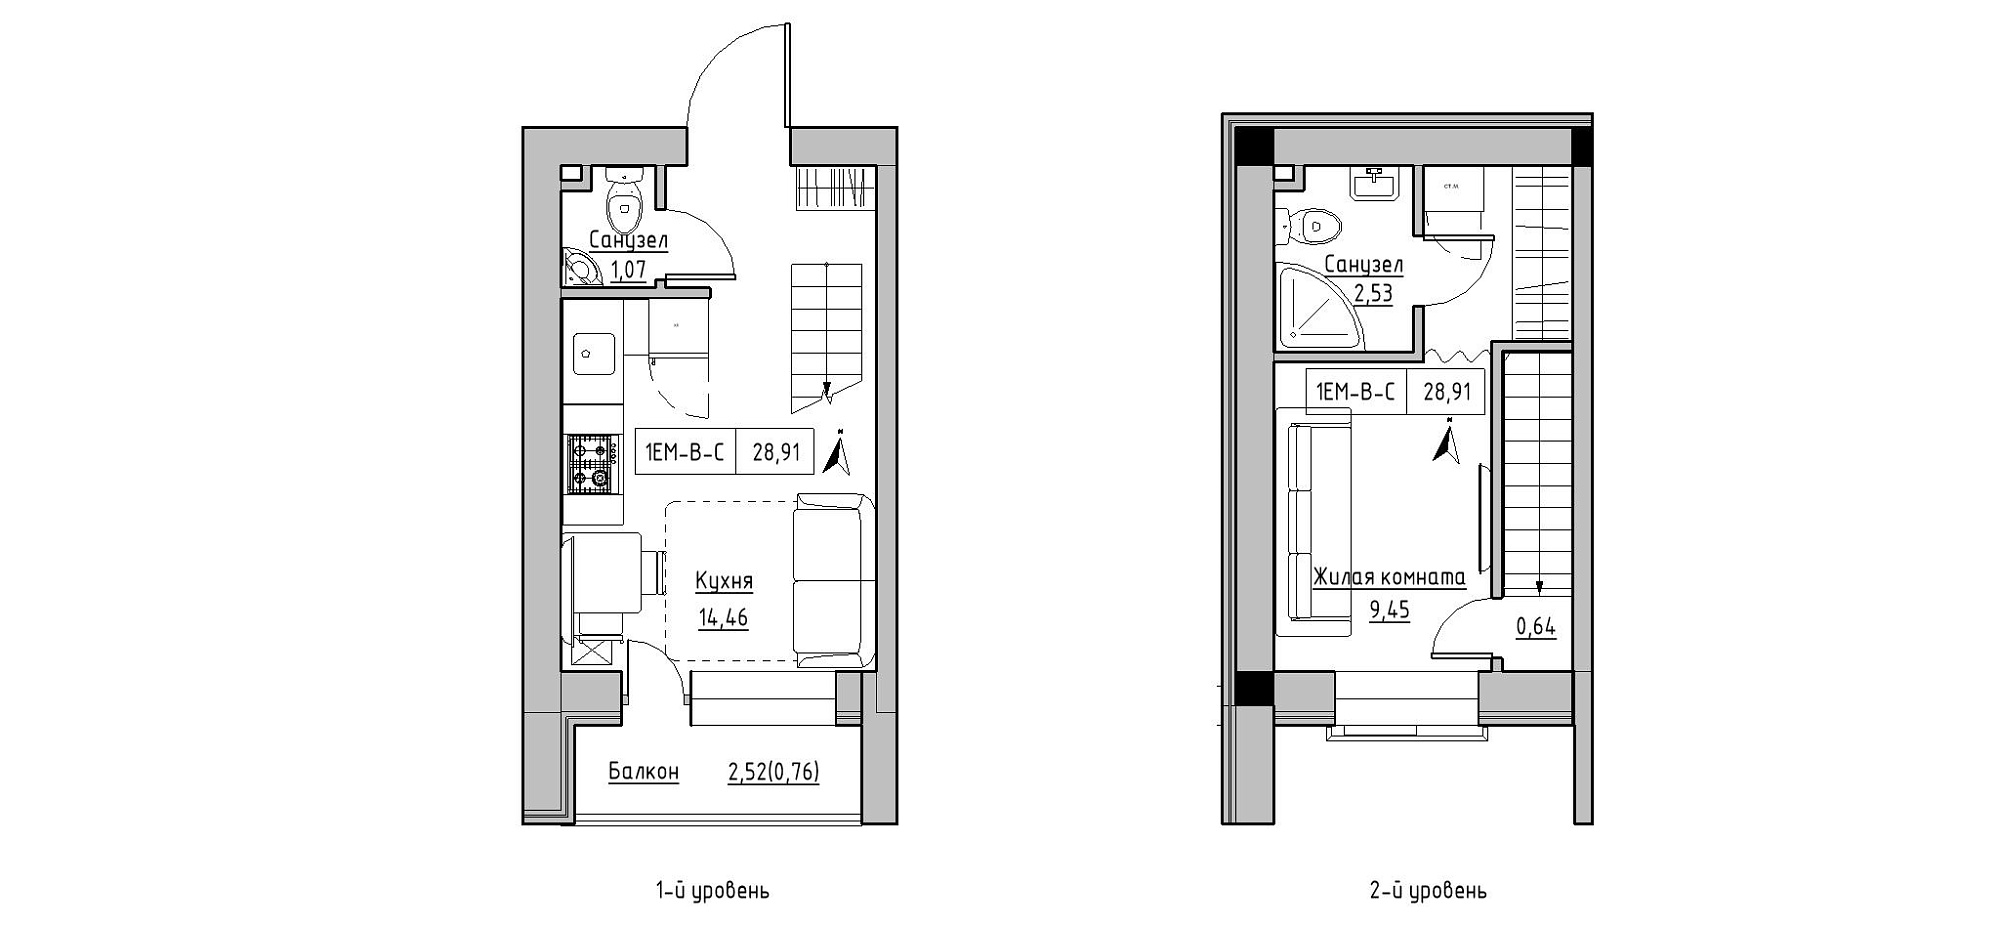 Planning 2-lvl flats area 28.91m2, KS-020-05/0006.